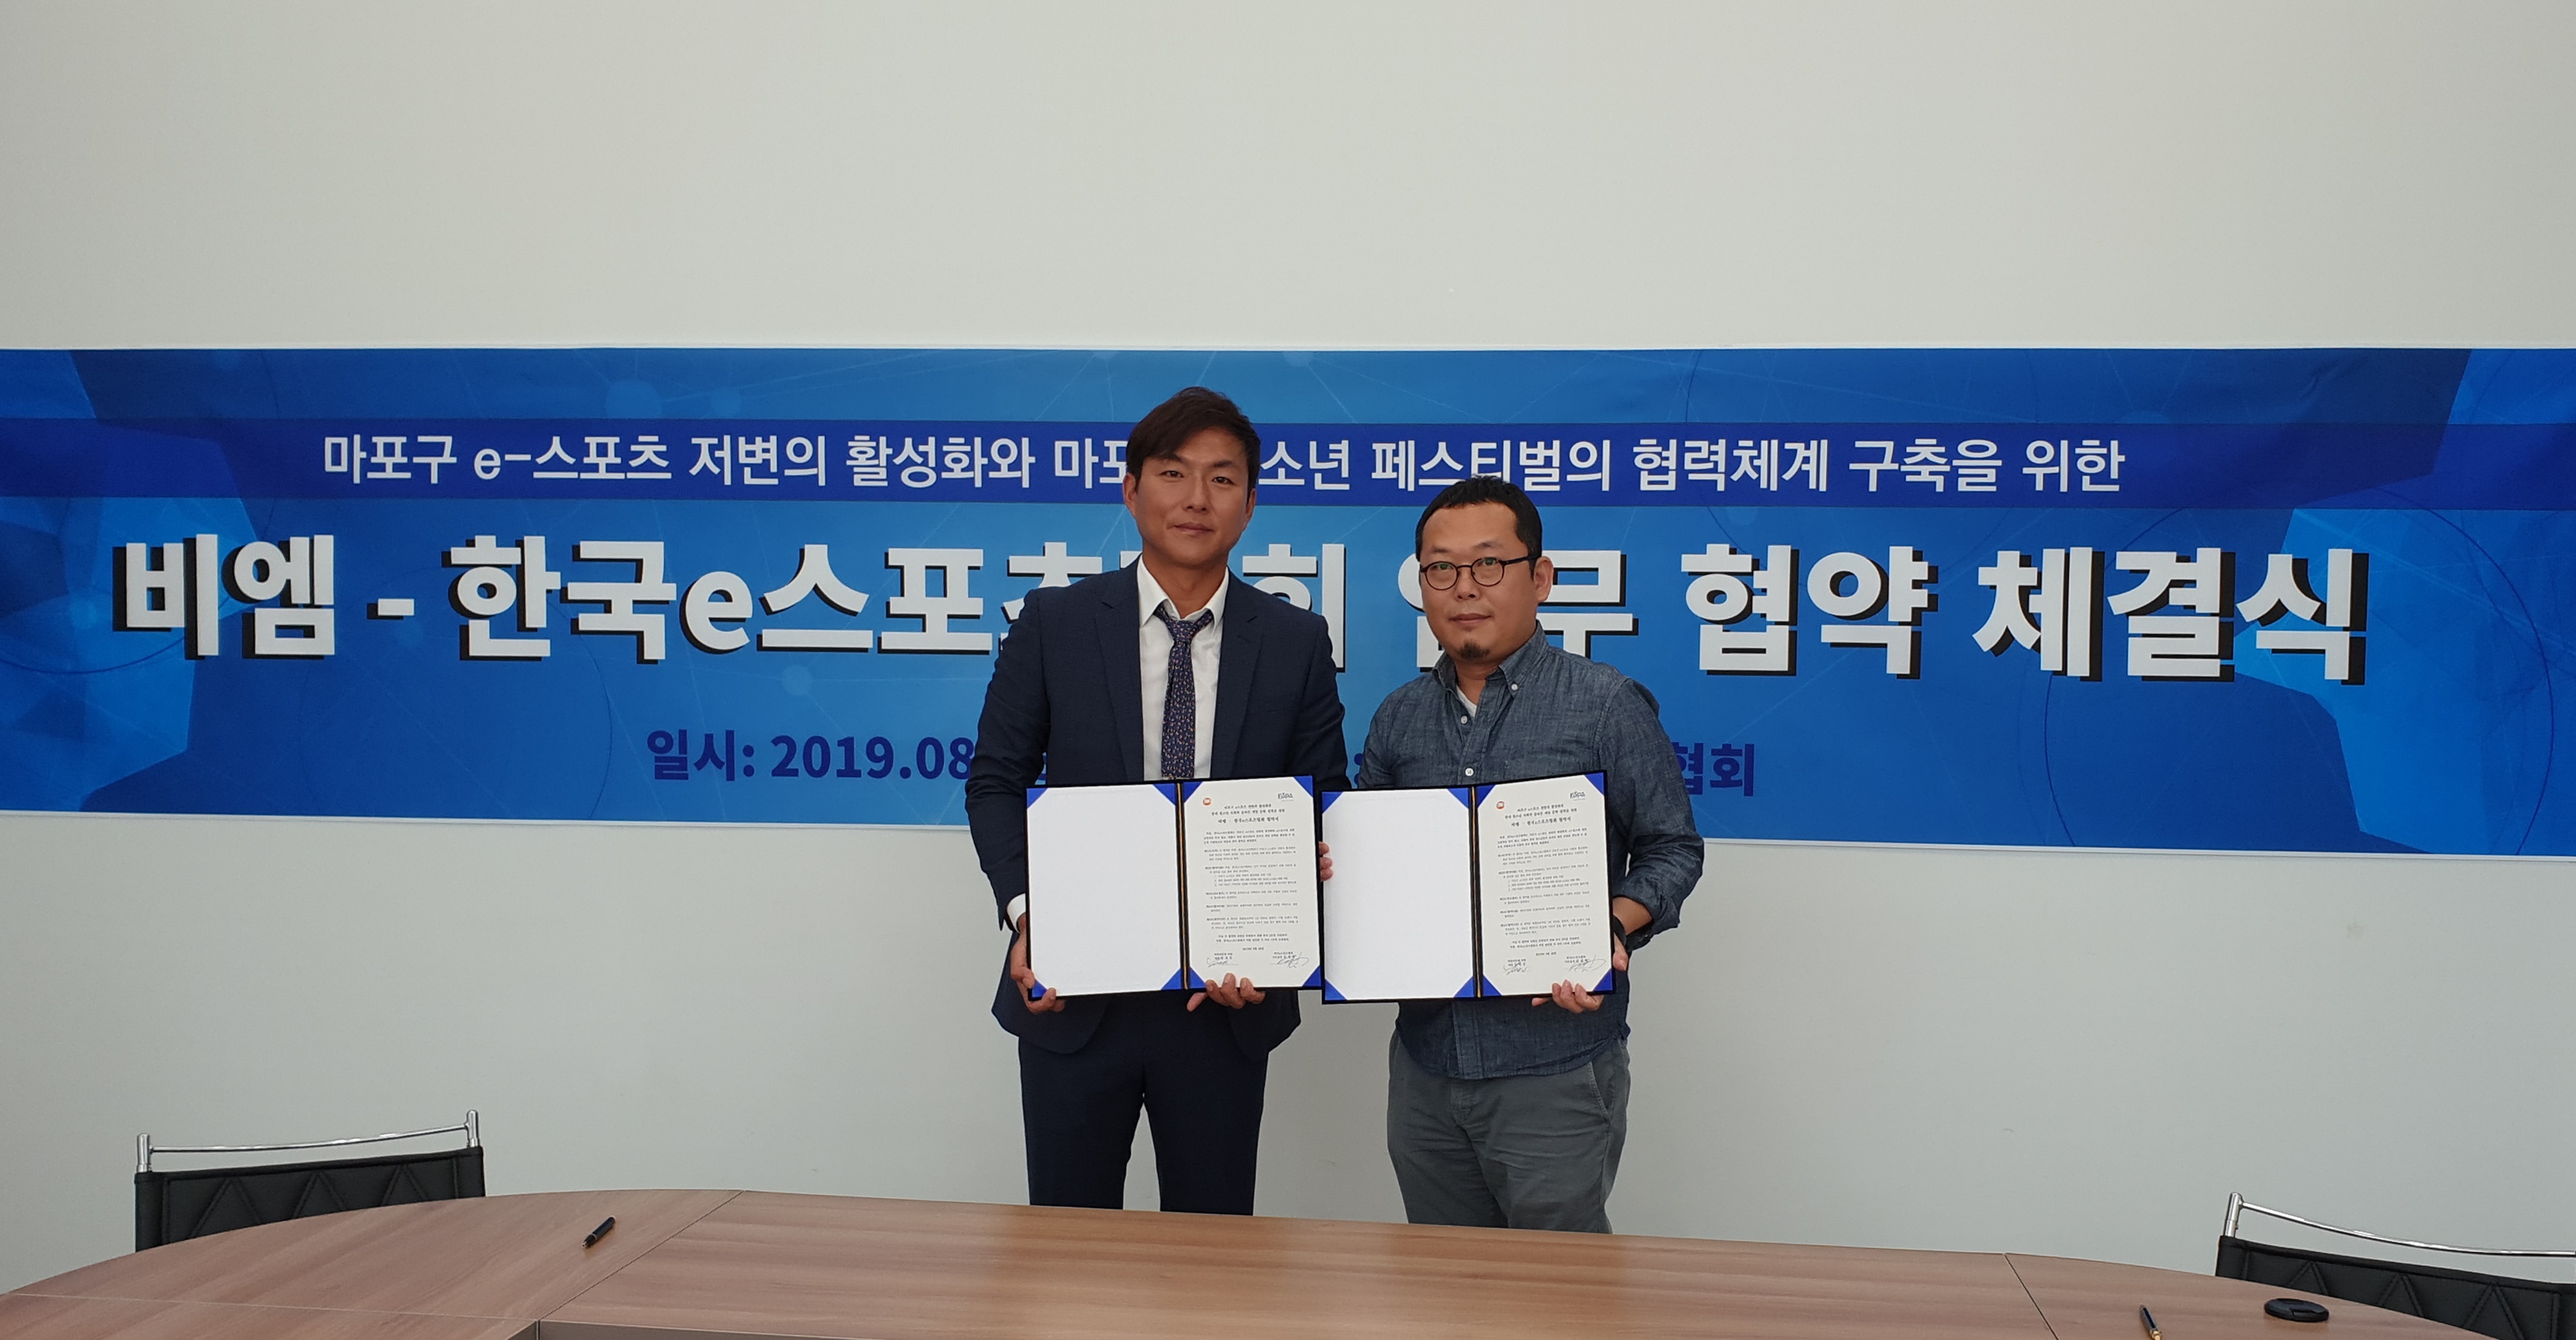 비엠-한국e스포츠협회 업무협약(MOU) 체결 ‘마포하늘연달축제’의 화려한 개막이 다가온다!